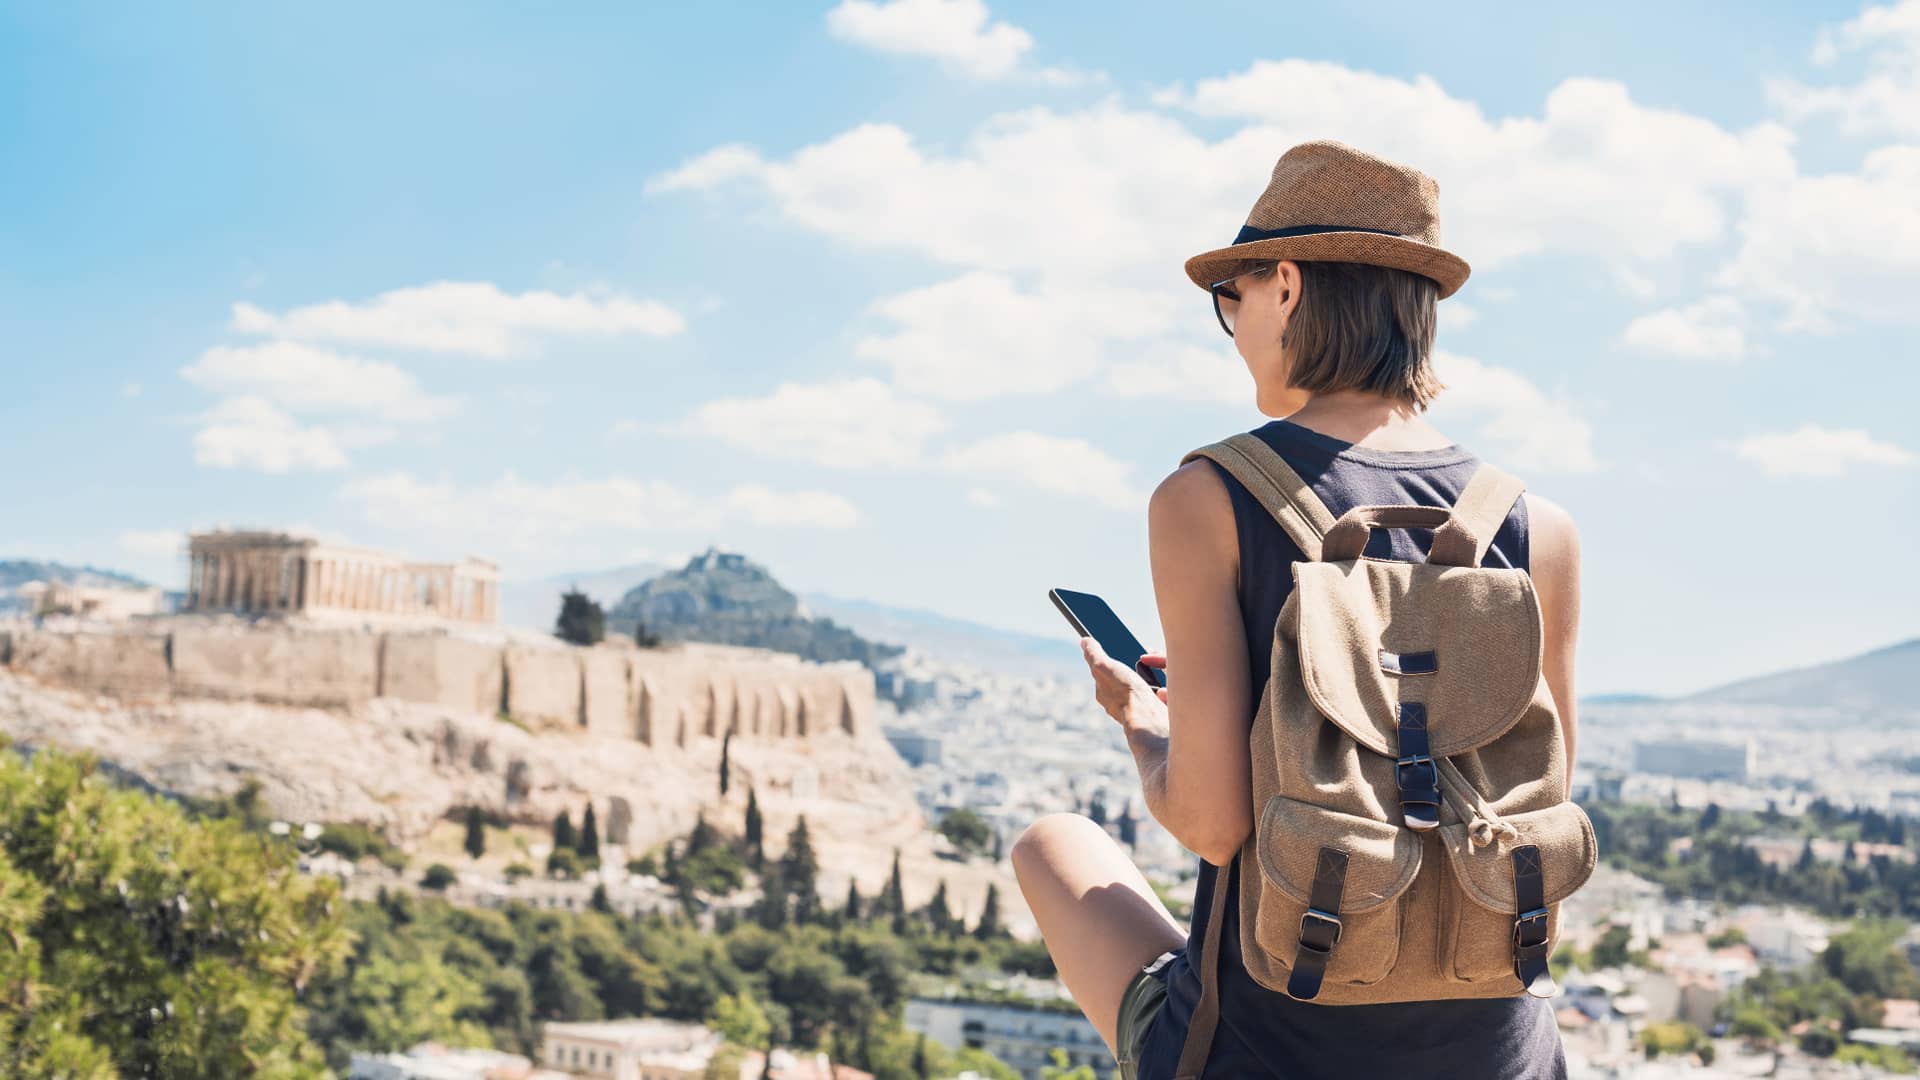 Turista utiliza su celular en el extranjero tras comprobar los costes de su roaming de telcel